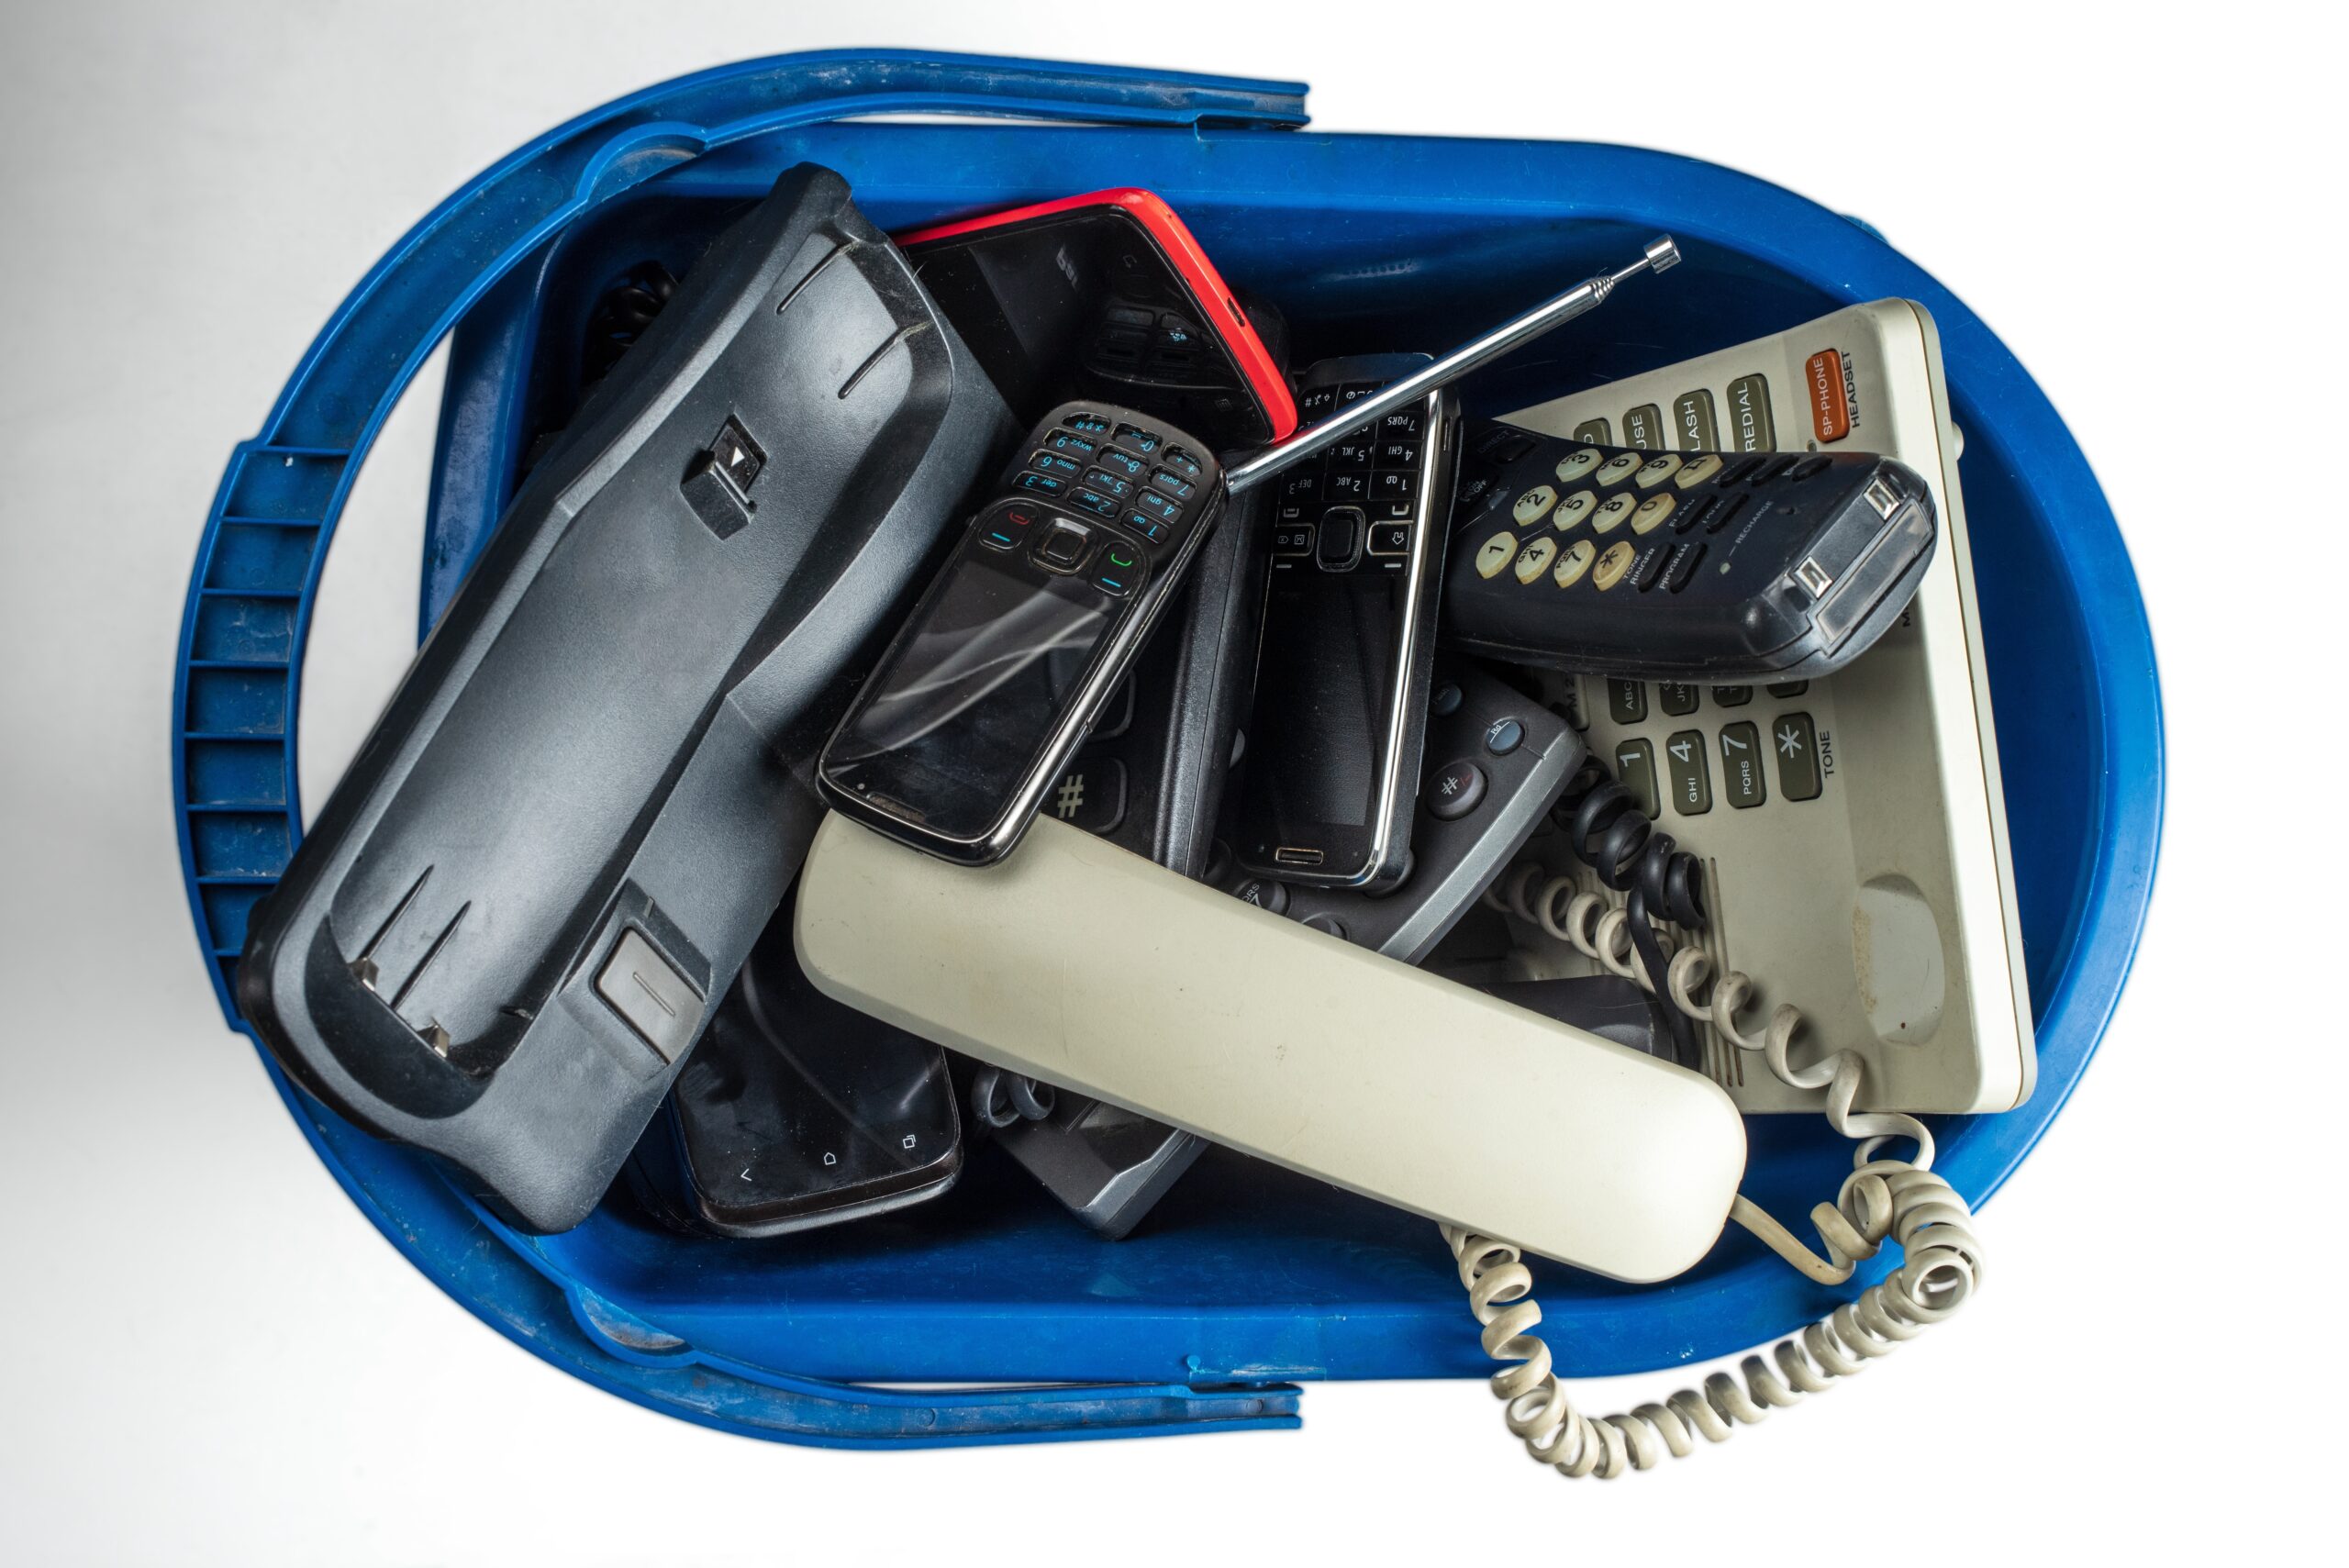 ETECSA vende estos teléfonos fijos en Cuba: ¿A qué precio?